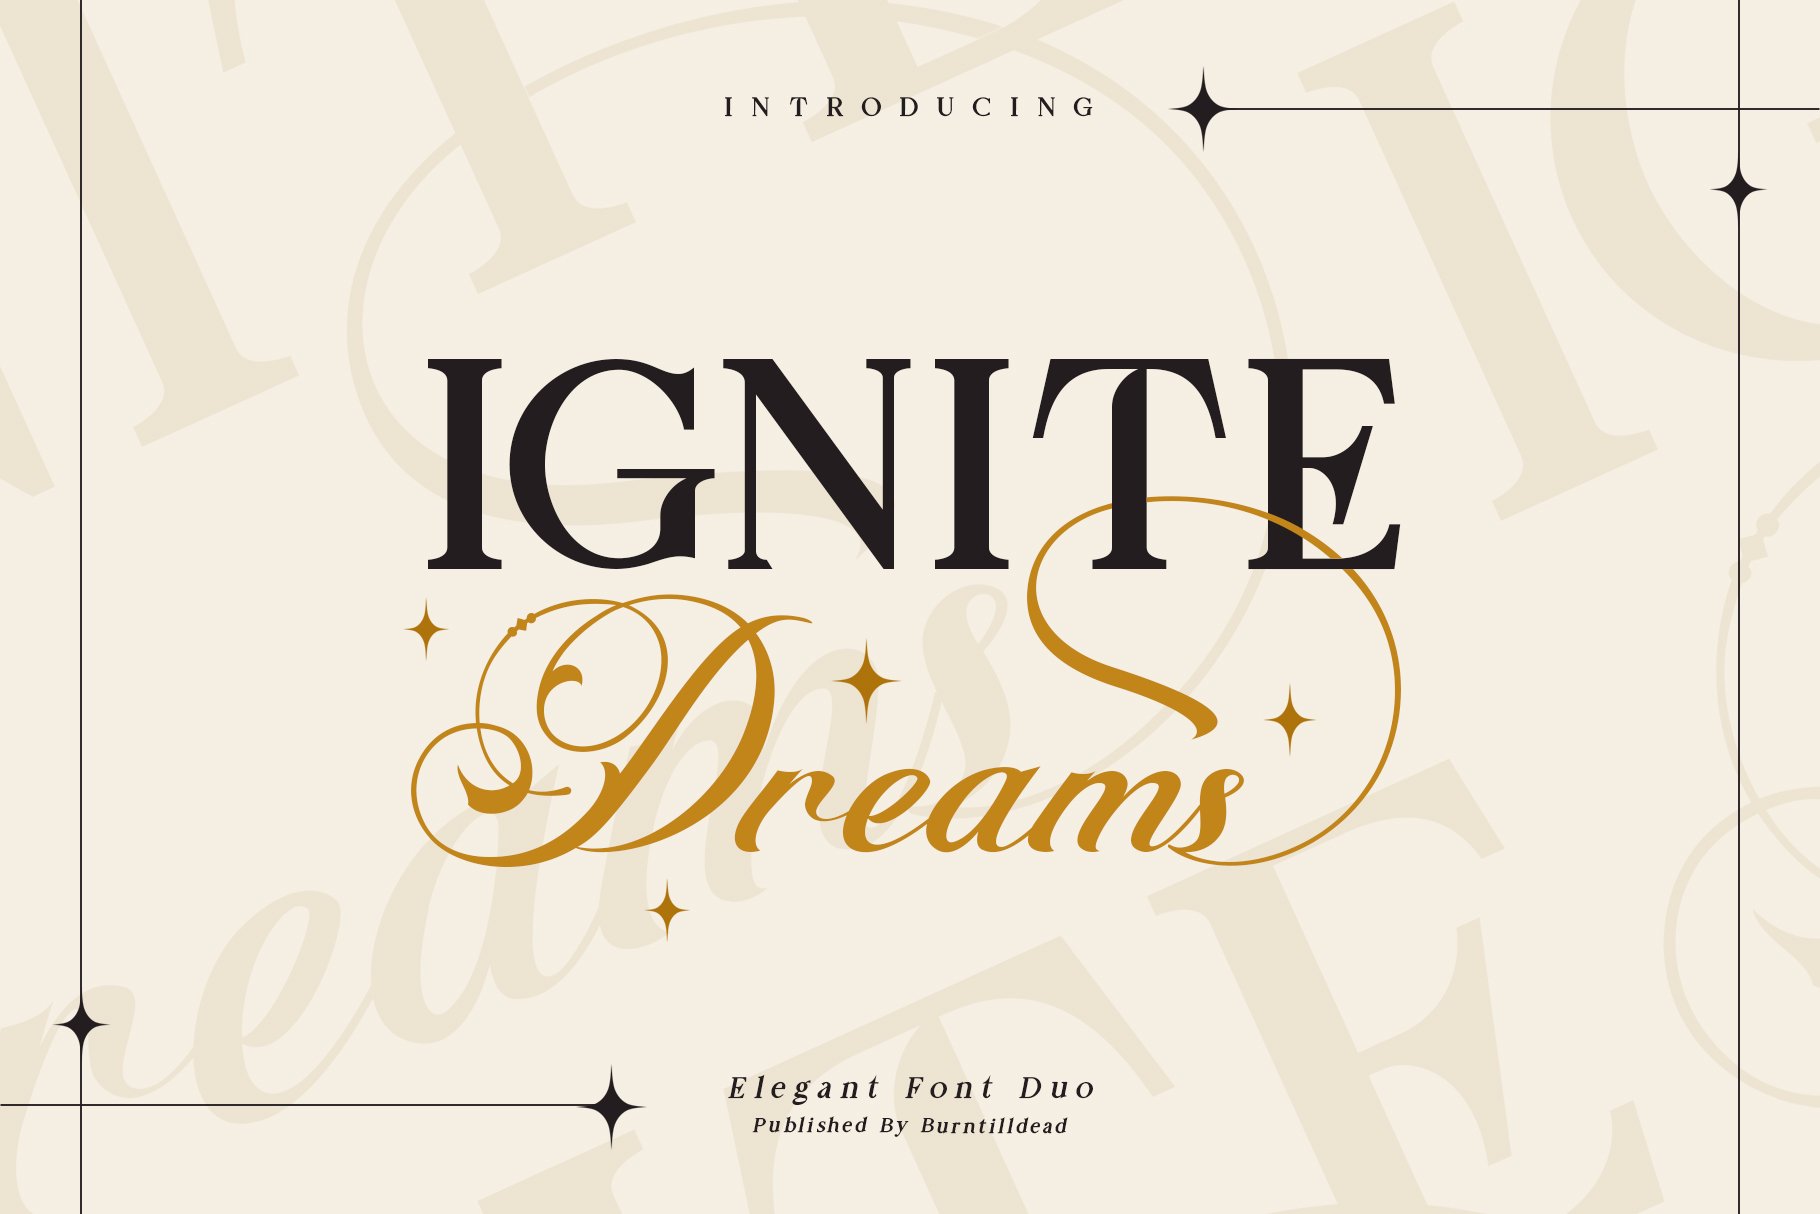 Font Ignite Dreams